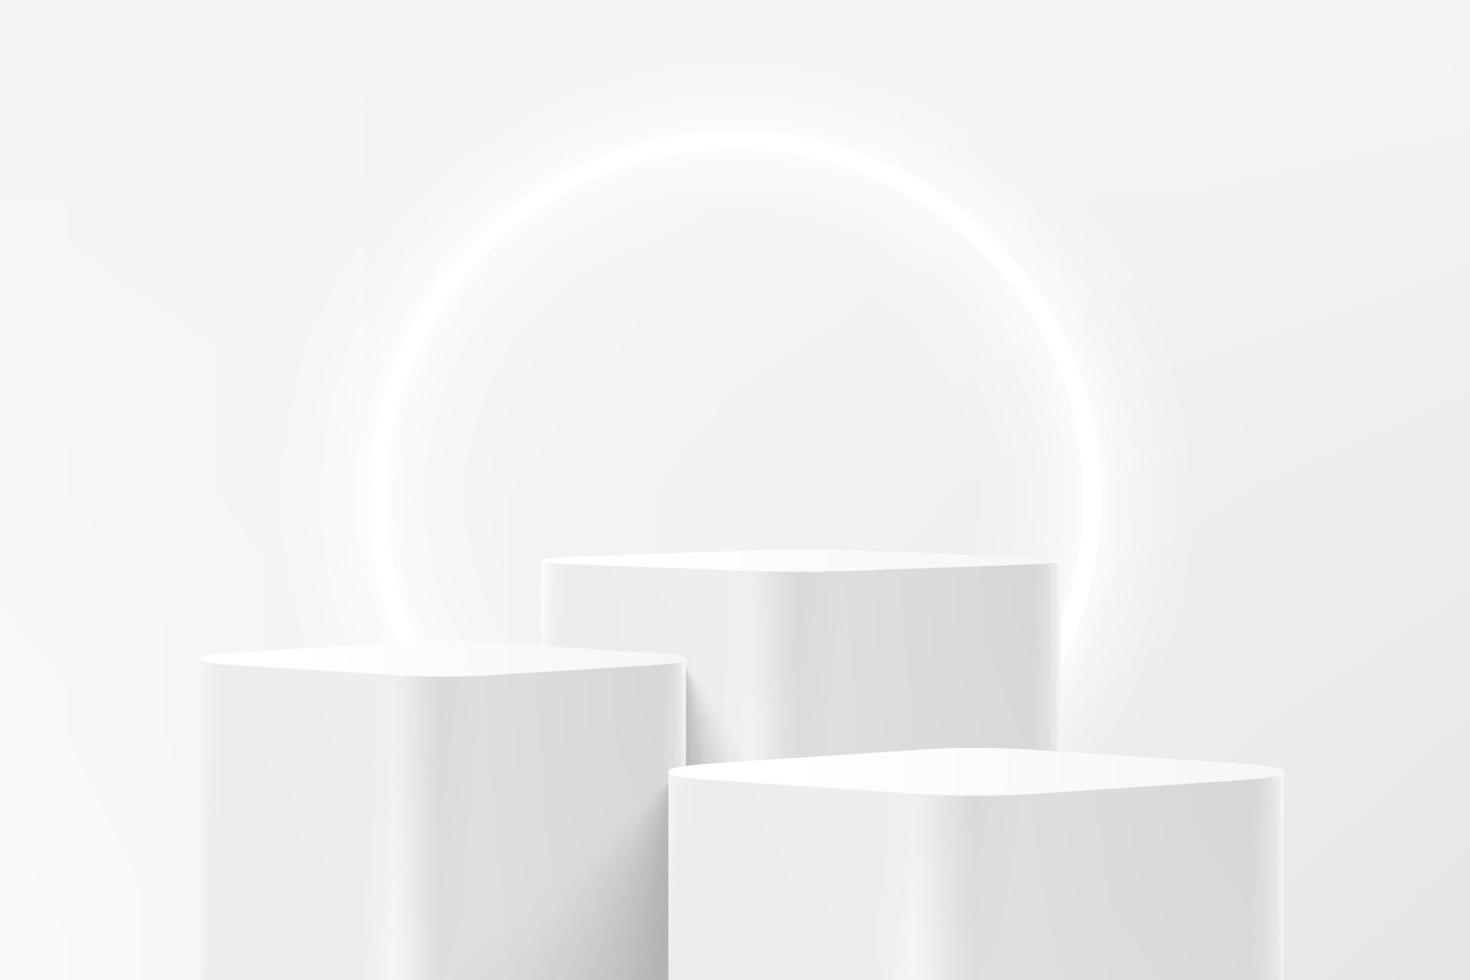 astratto 3d bianco gradini rotondi angolo cubo piedistallo o supporto podio con sfondo luminoso anello al neon. scena bianca della parete minima per la presentazione dell'esposizione del prodotto. piattaforma di rendering geometrico vettoriale. vettore